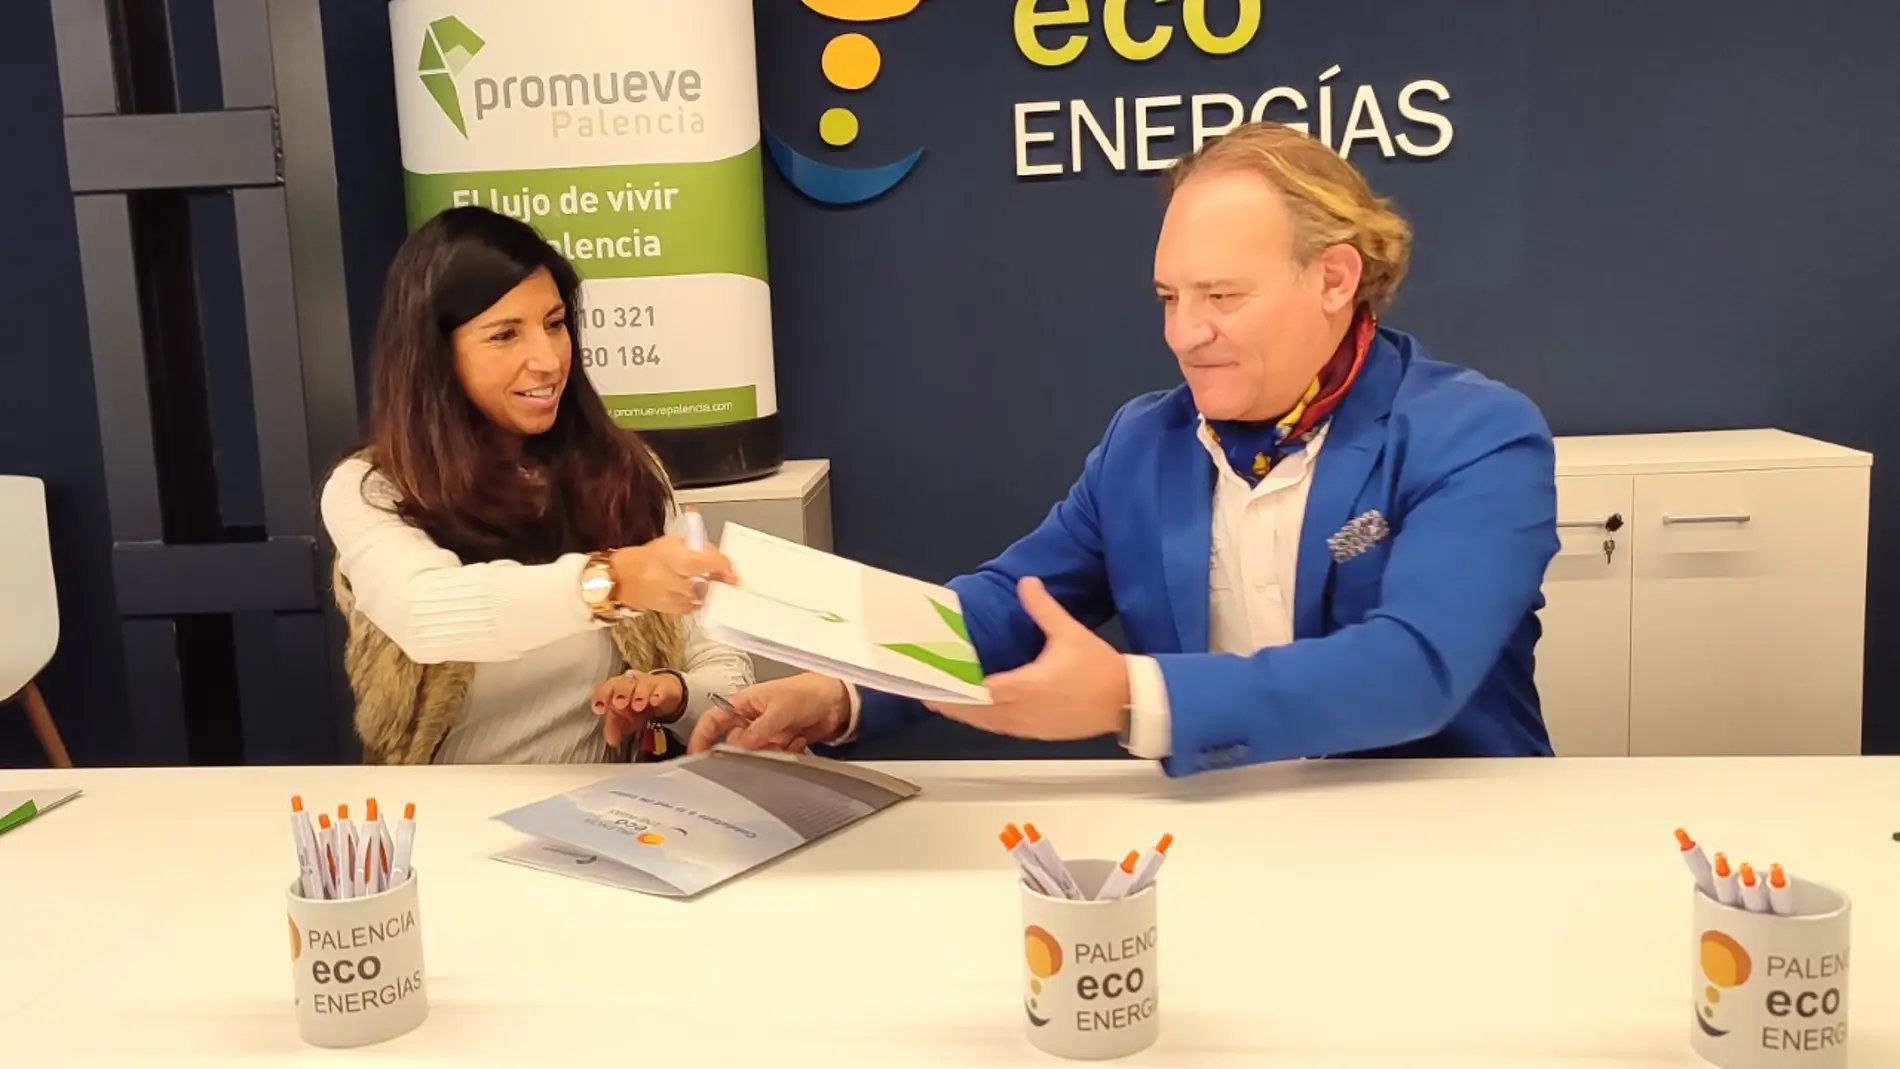 Palencia Eco Energías y Promueve Palencia firman un convenio de colaboración